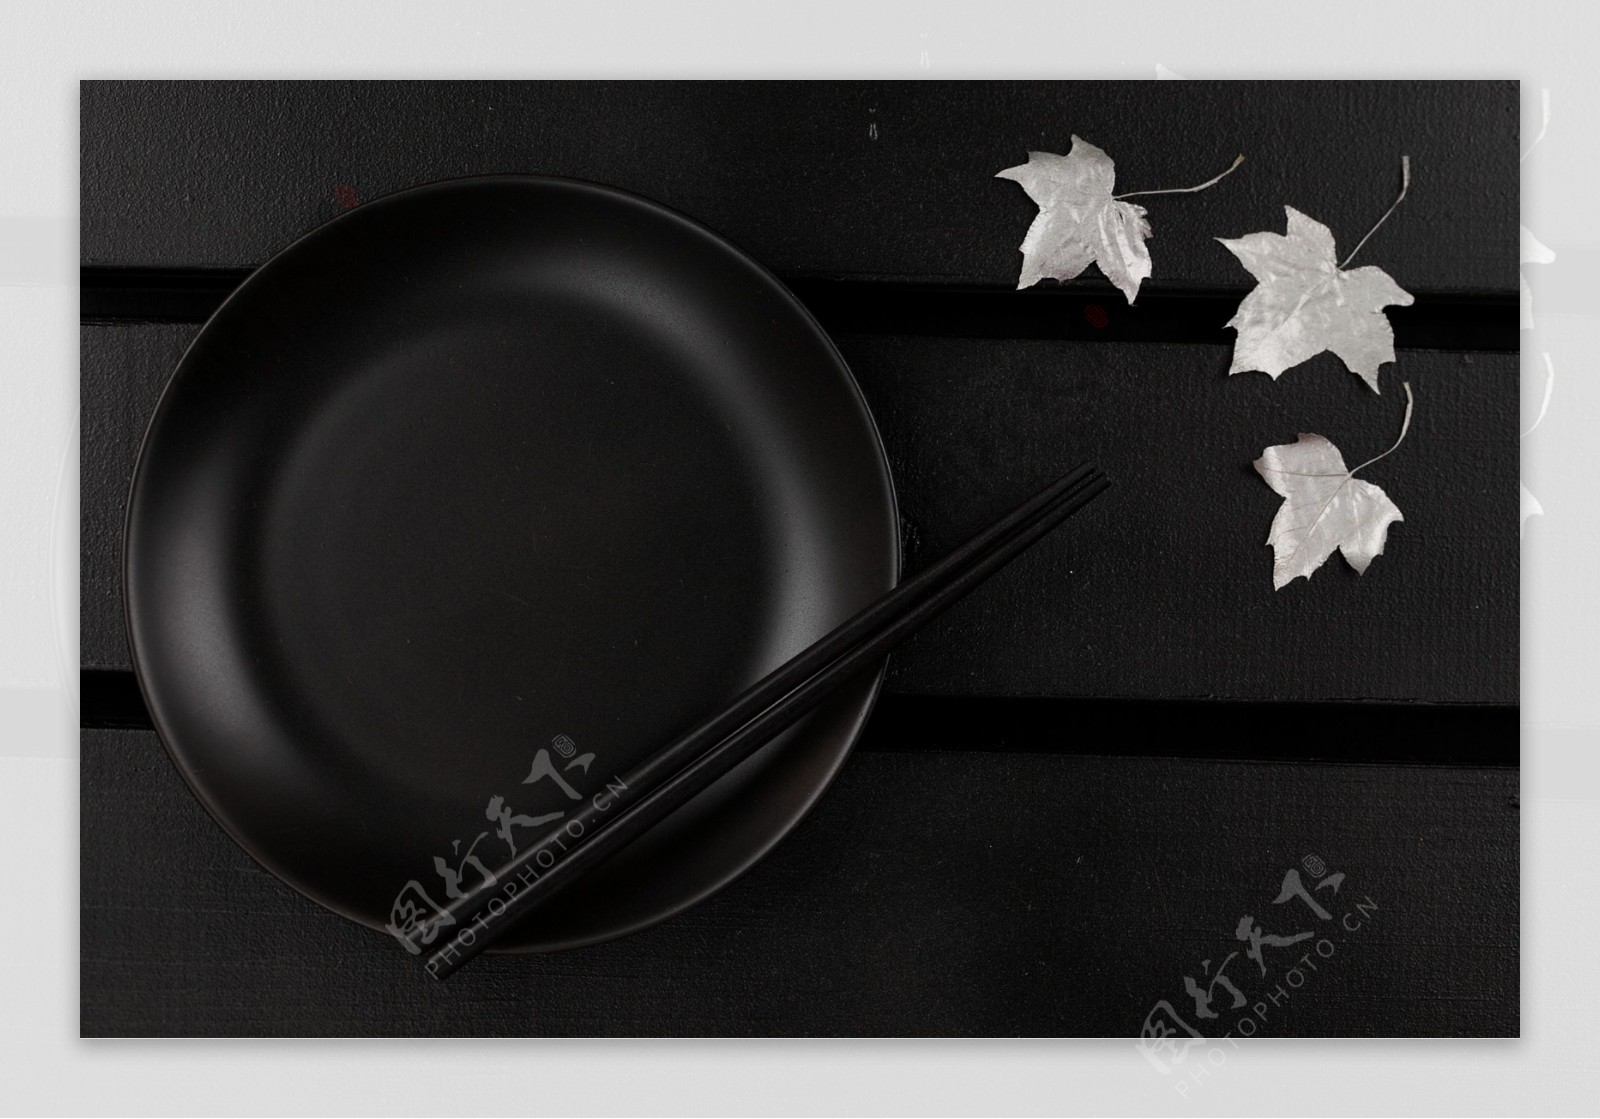 铁锅和筷子枫叶